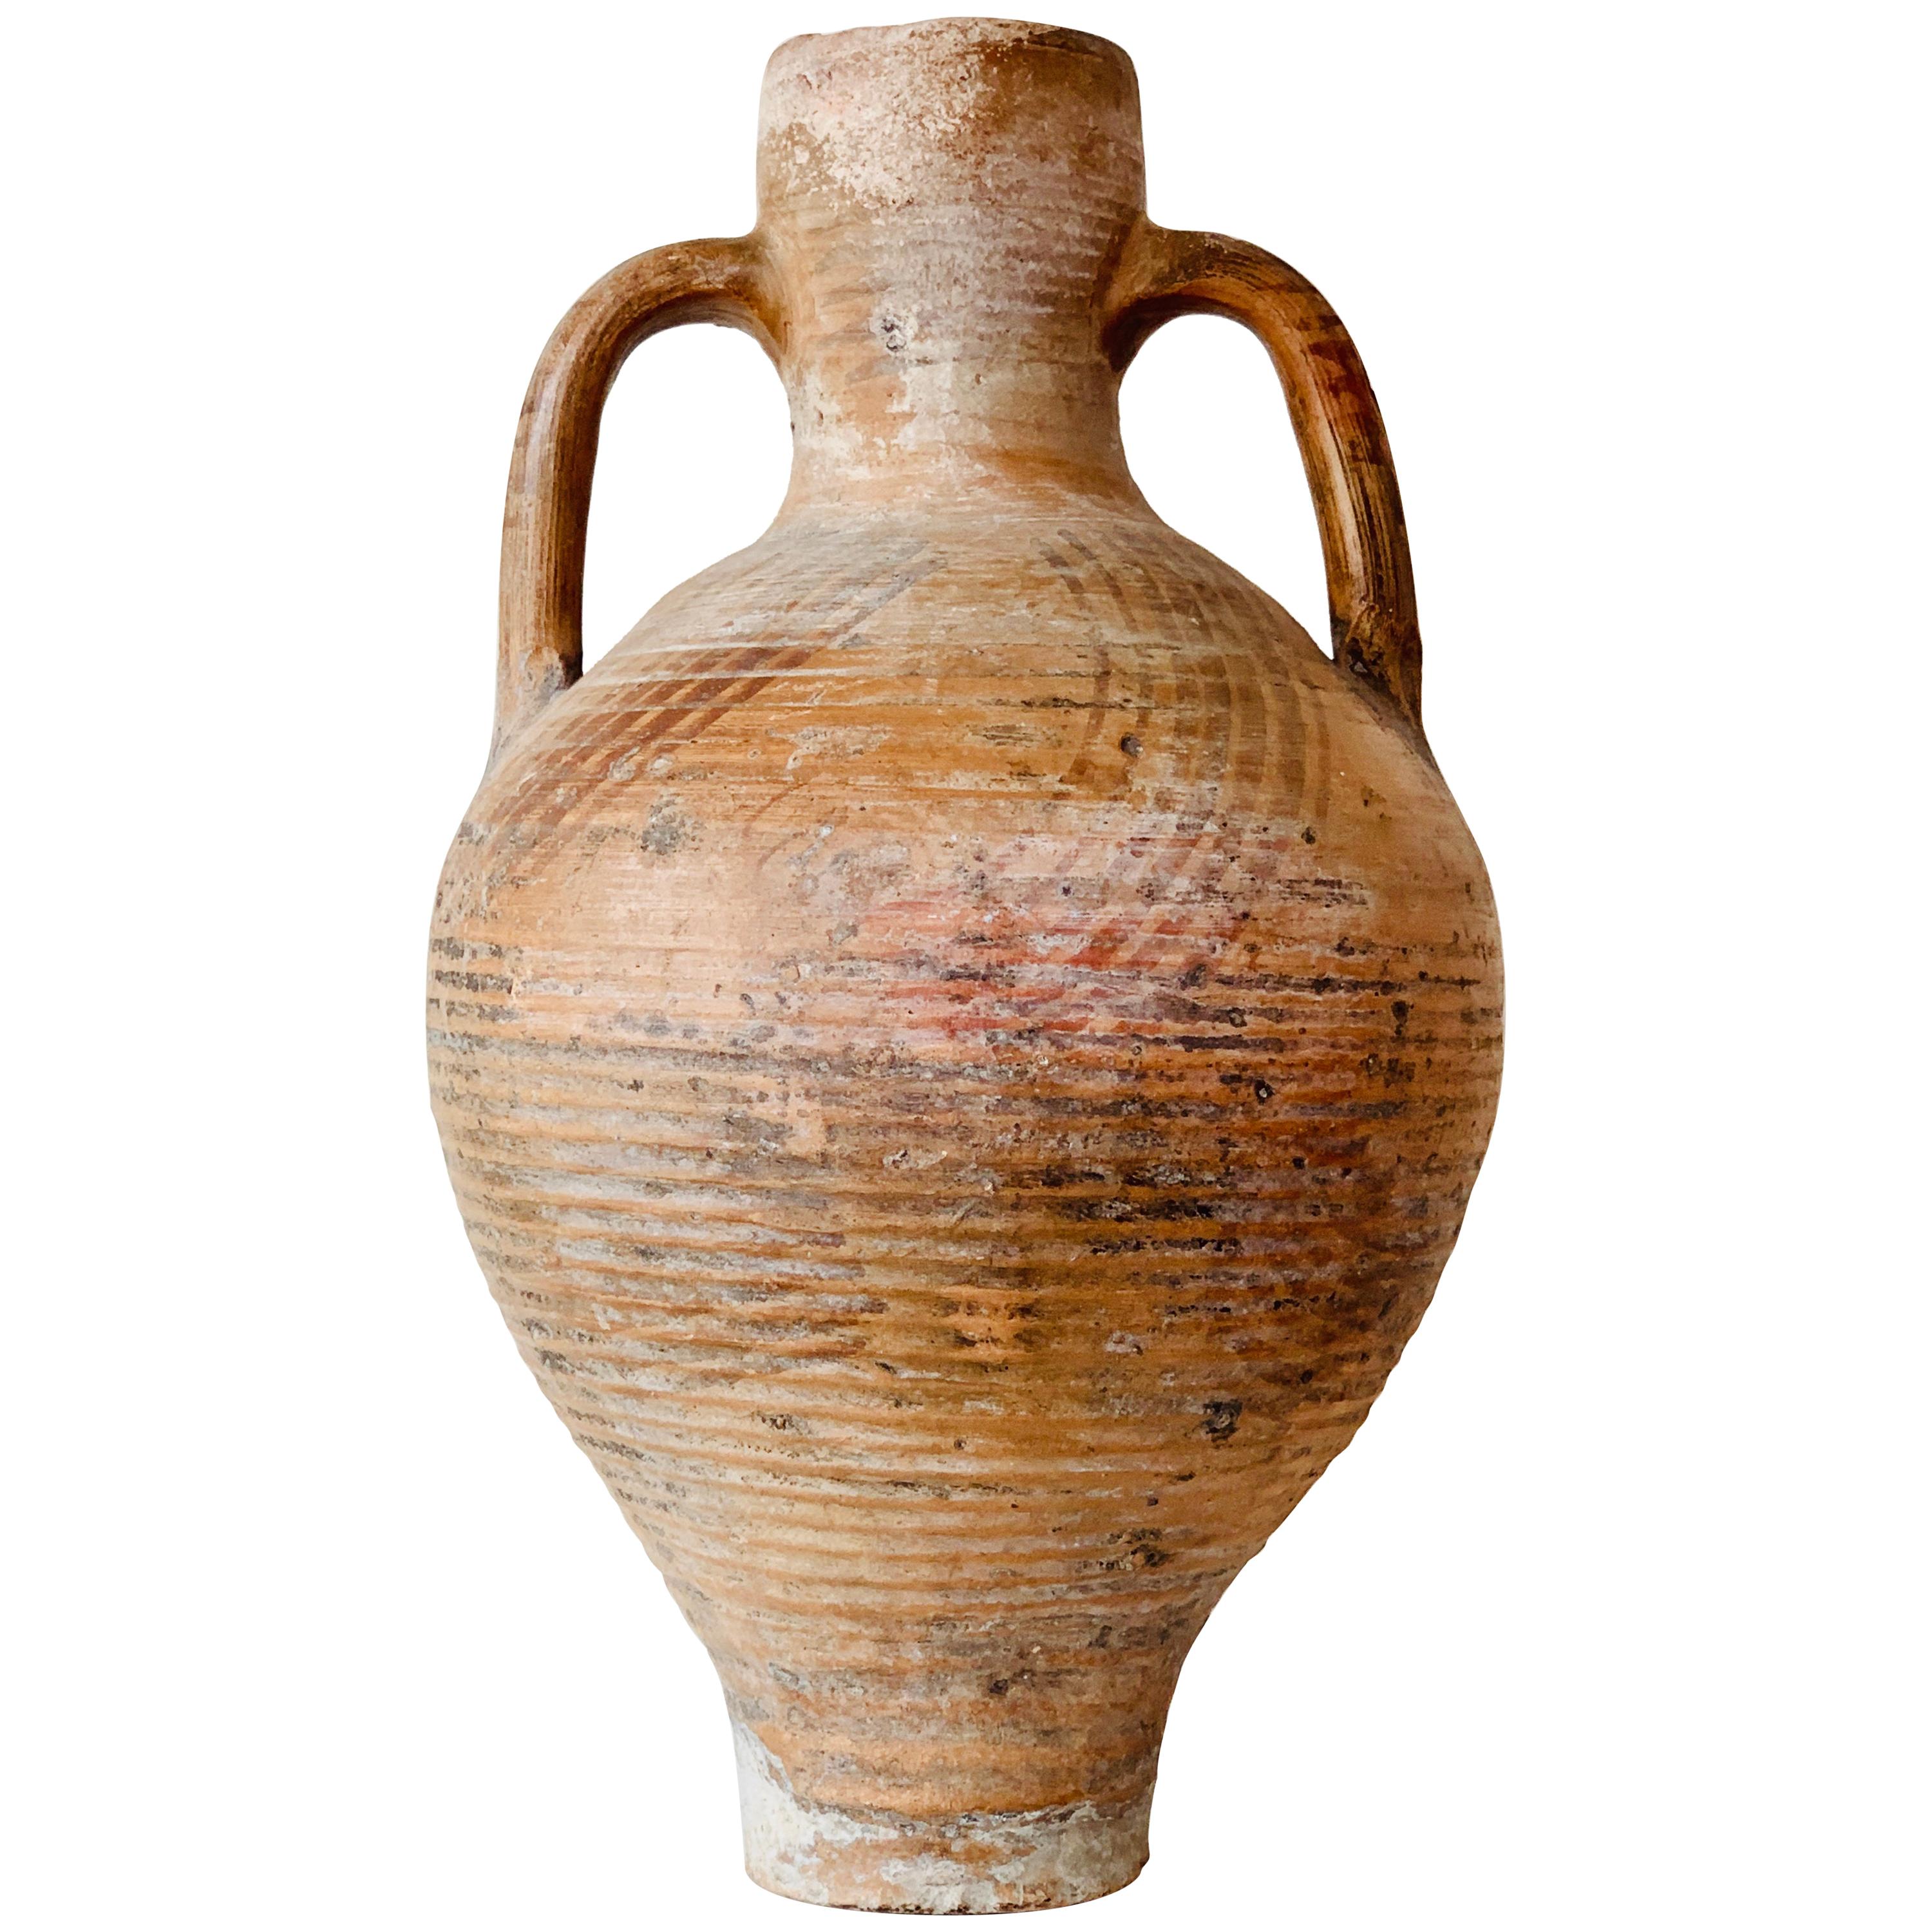 19ème siècle Picher "Cantaro" de Calanda:: Espagne:: Vase en terre cuite